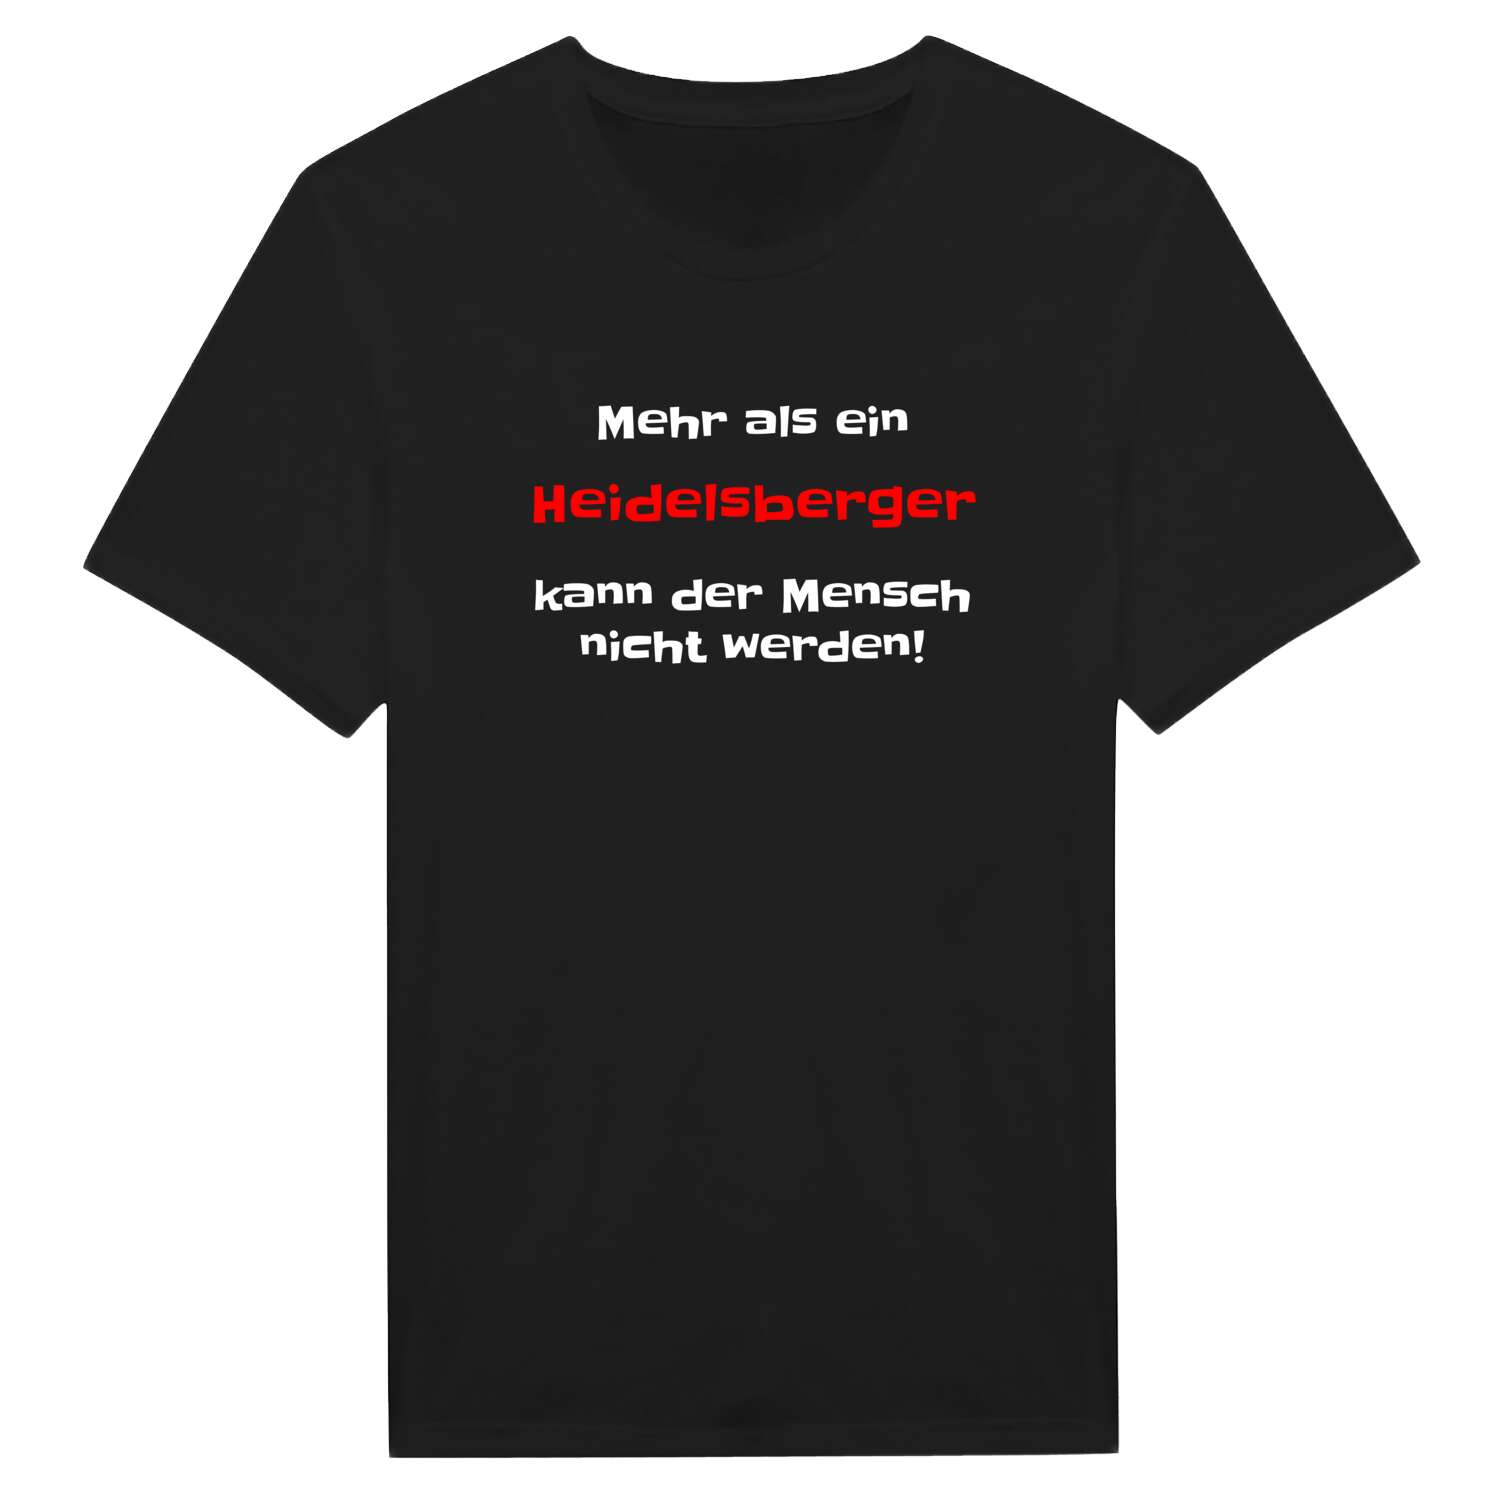 Heidelsberg T-Shirt »Mehr als ein«